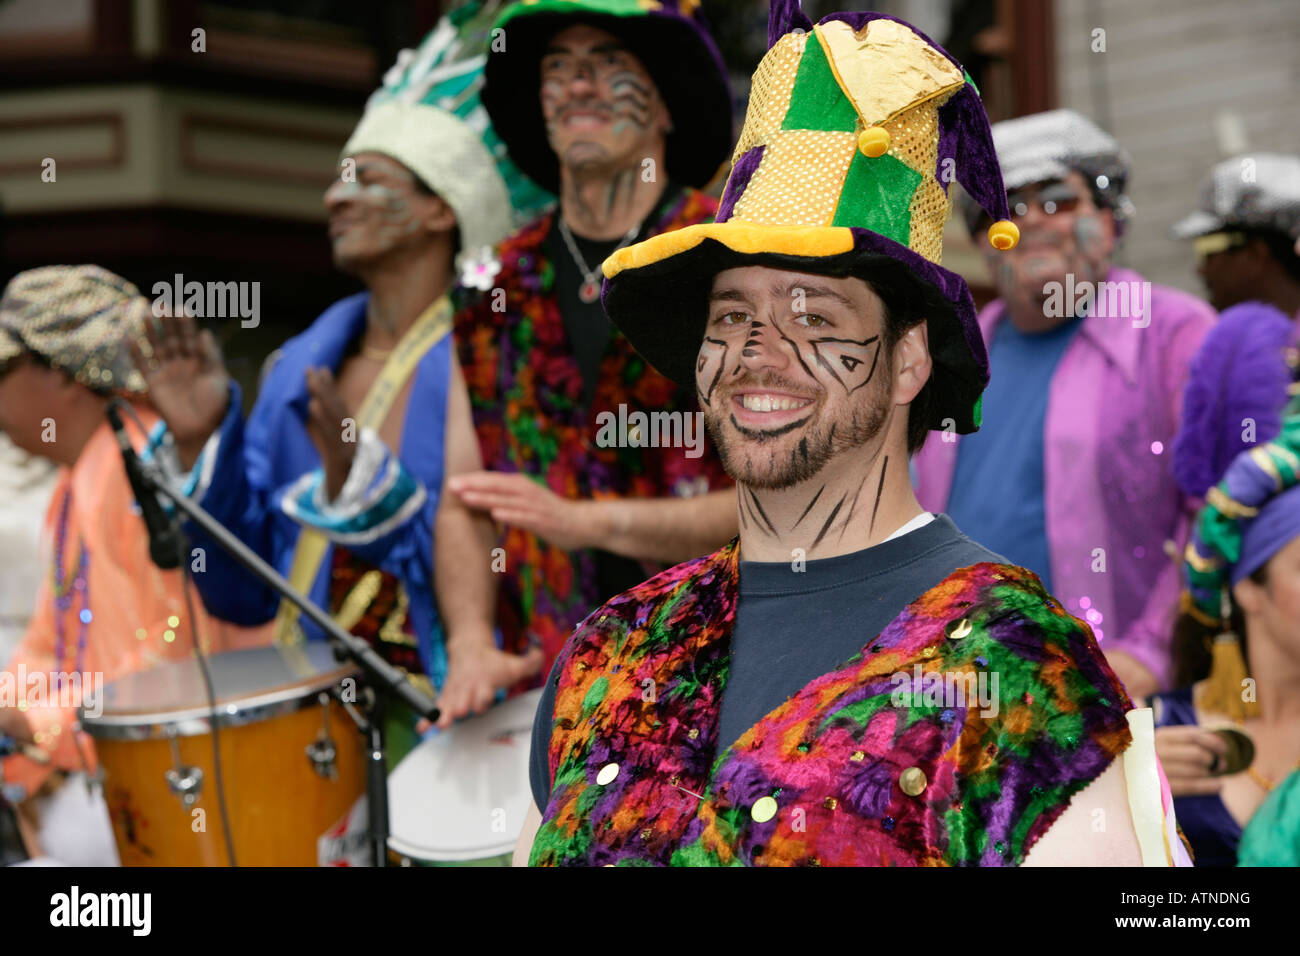 Carnaval Parade in San Francisco, California, USA Stock Photo